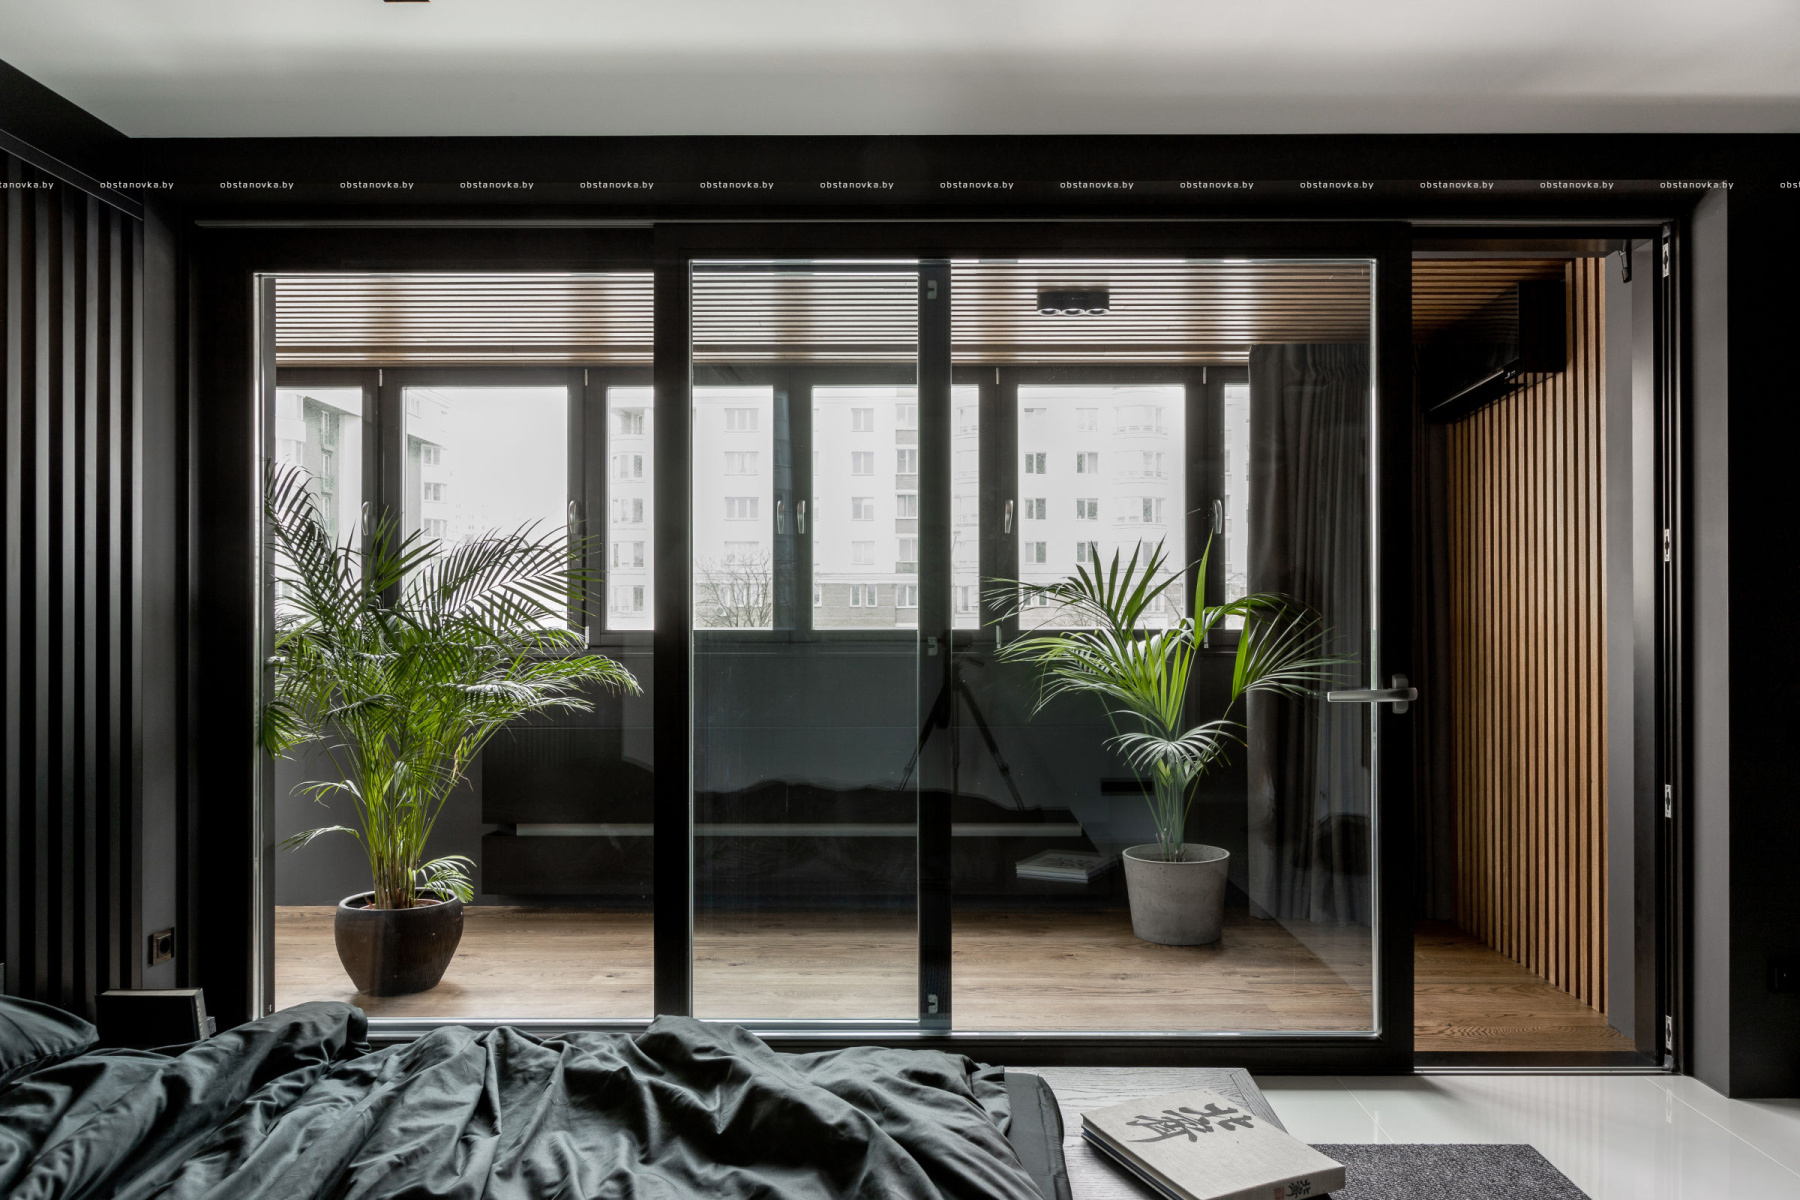 Дизайн интерьера квартиры «Re apertment»